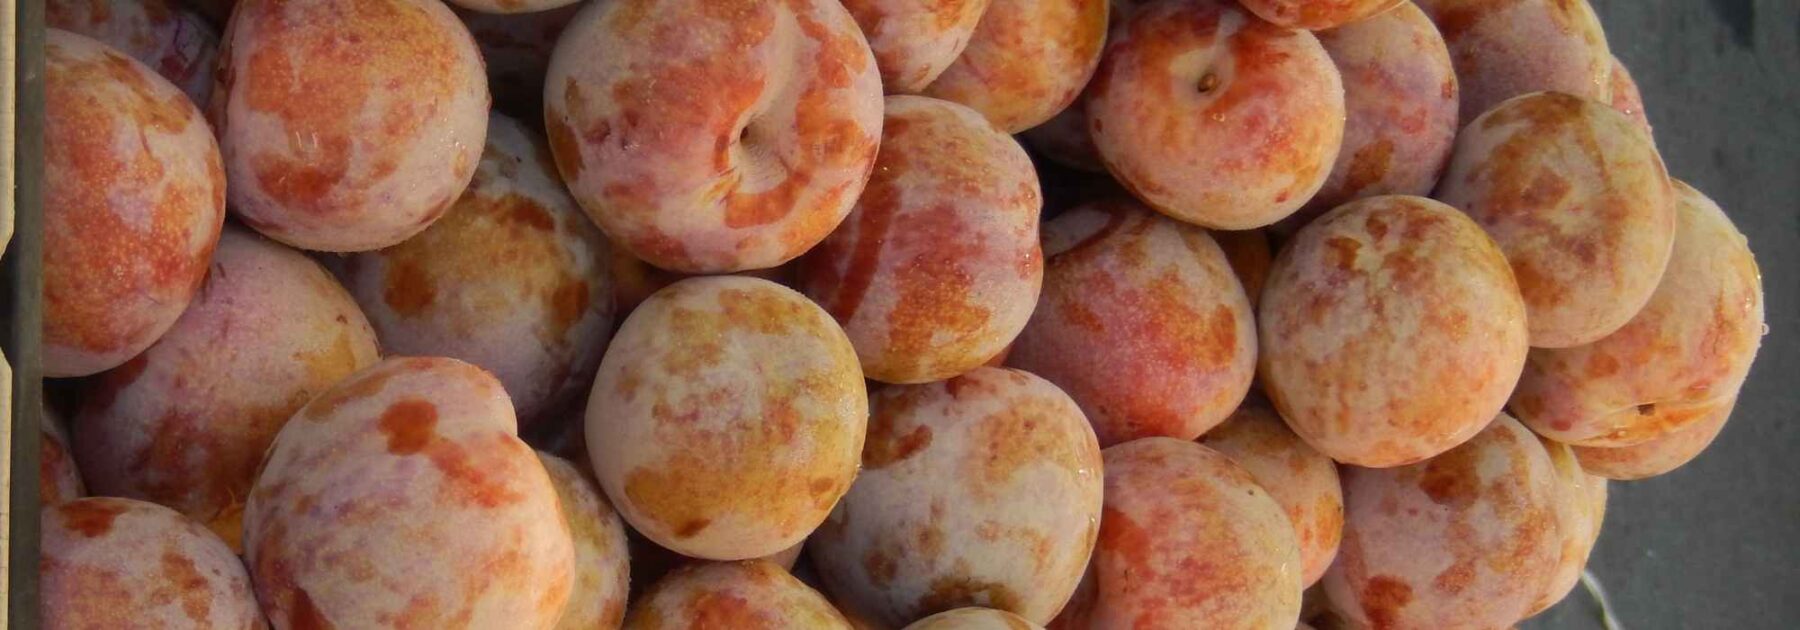 Pluot ou abricot-prune : les meilleures variétés